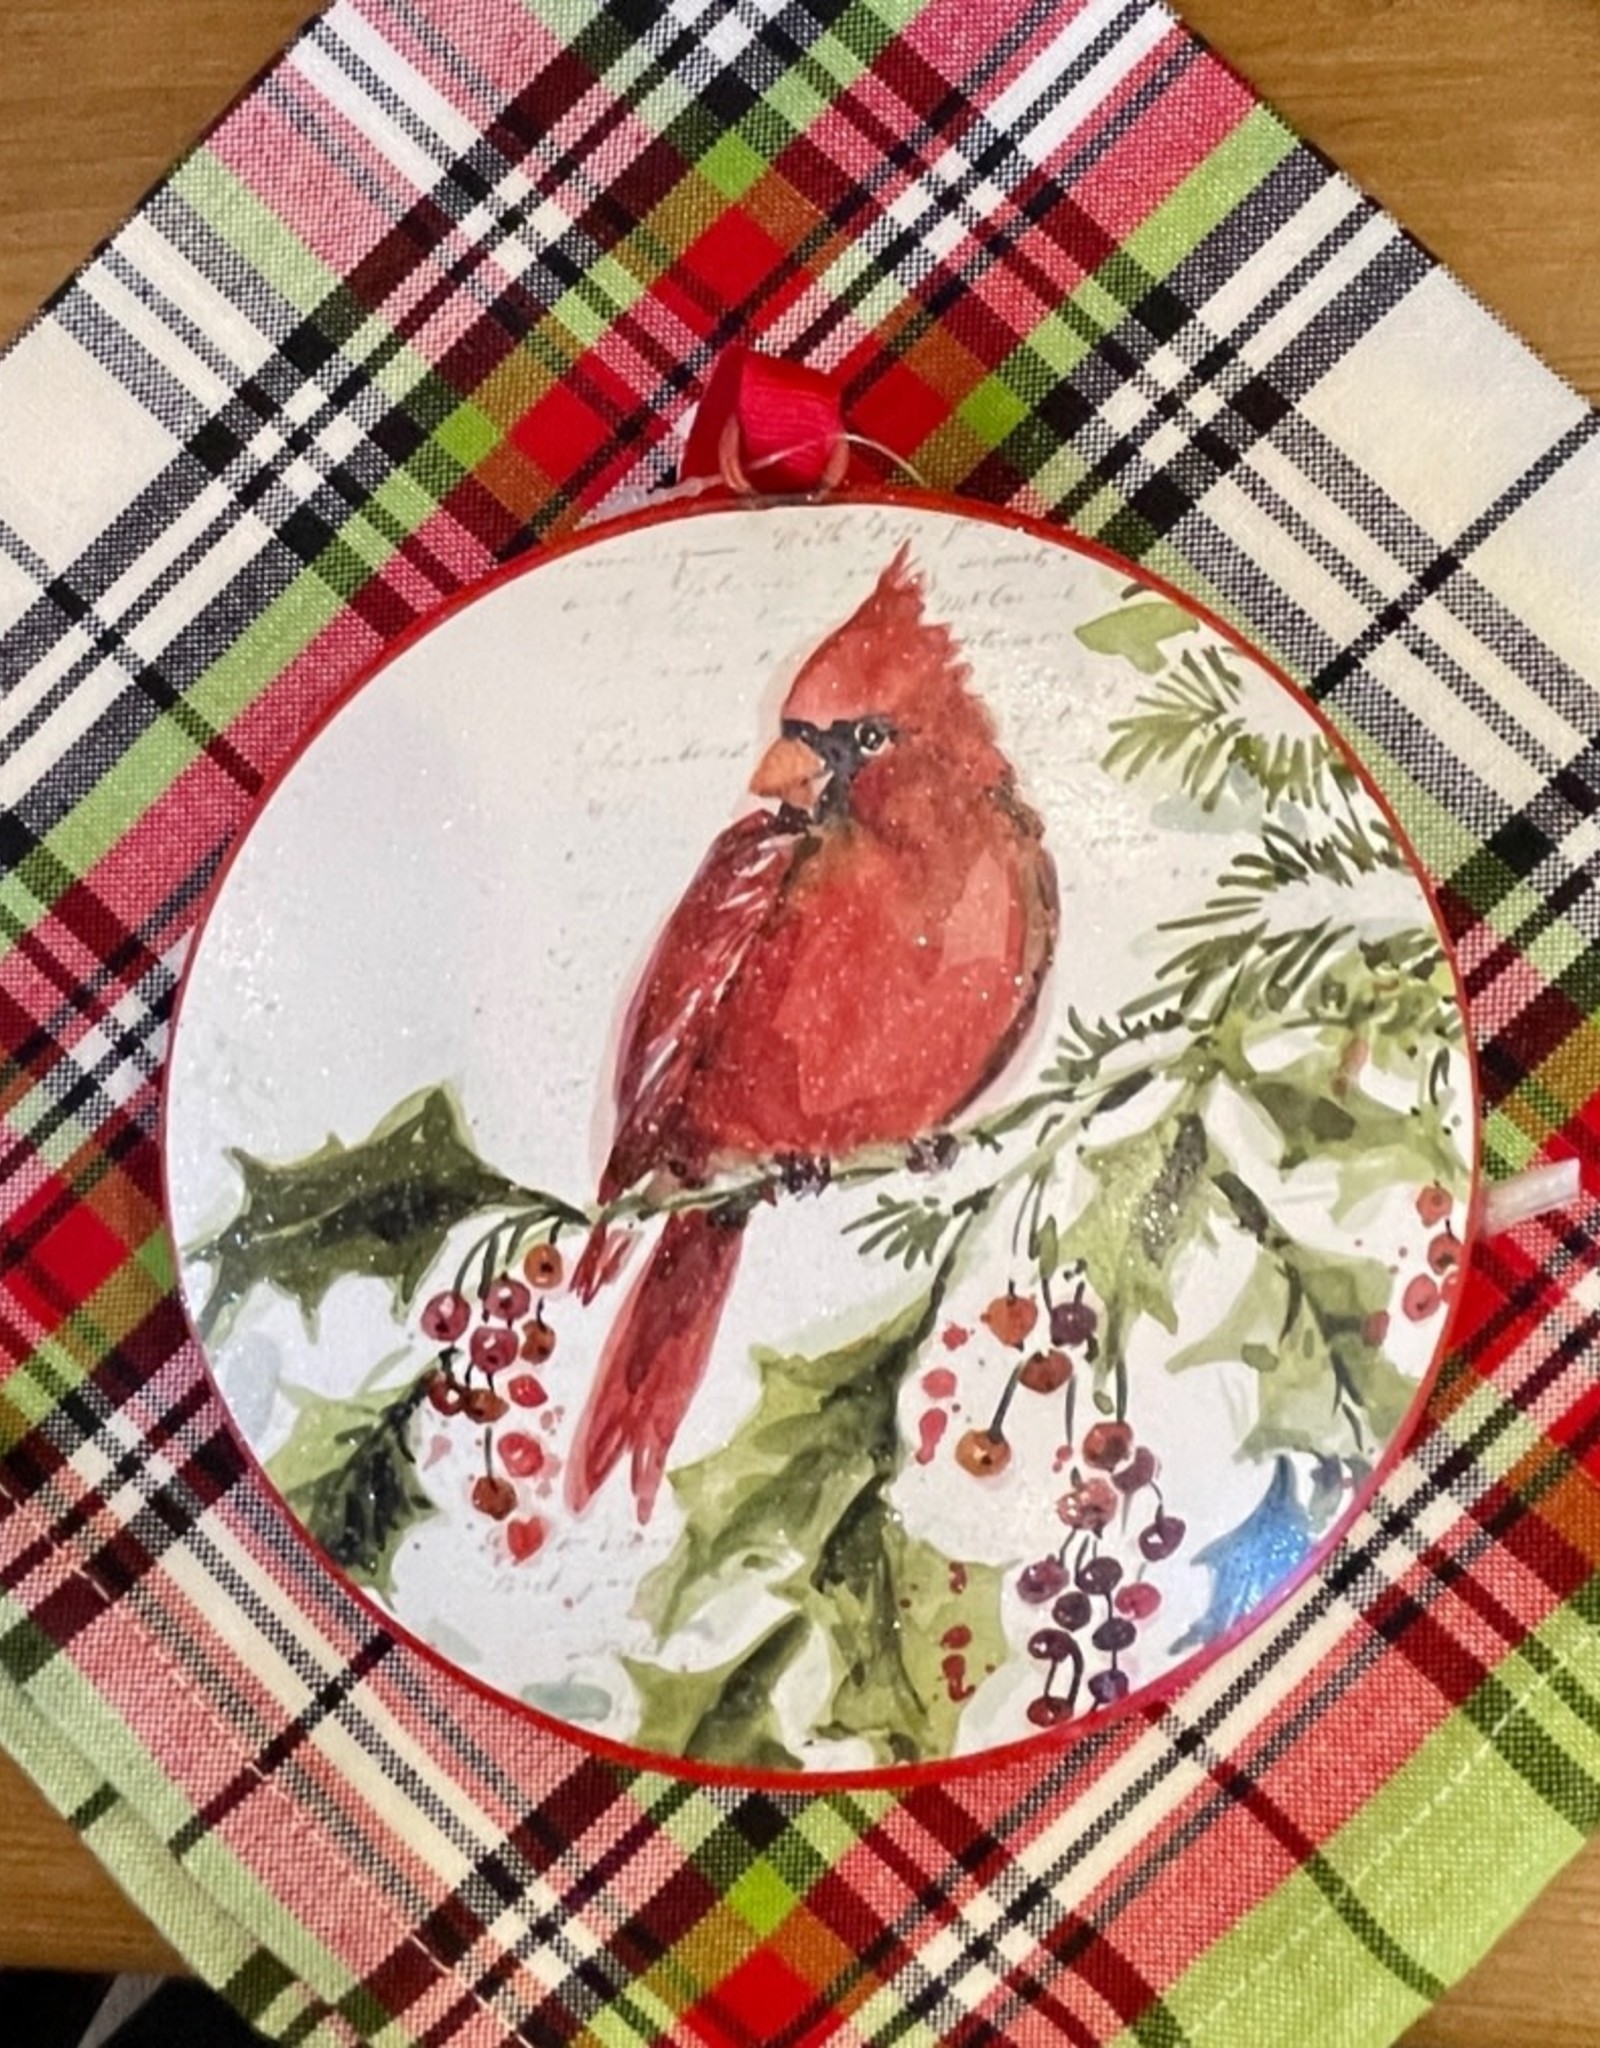 Cardinal Disc Ornament 6"